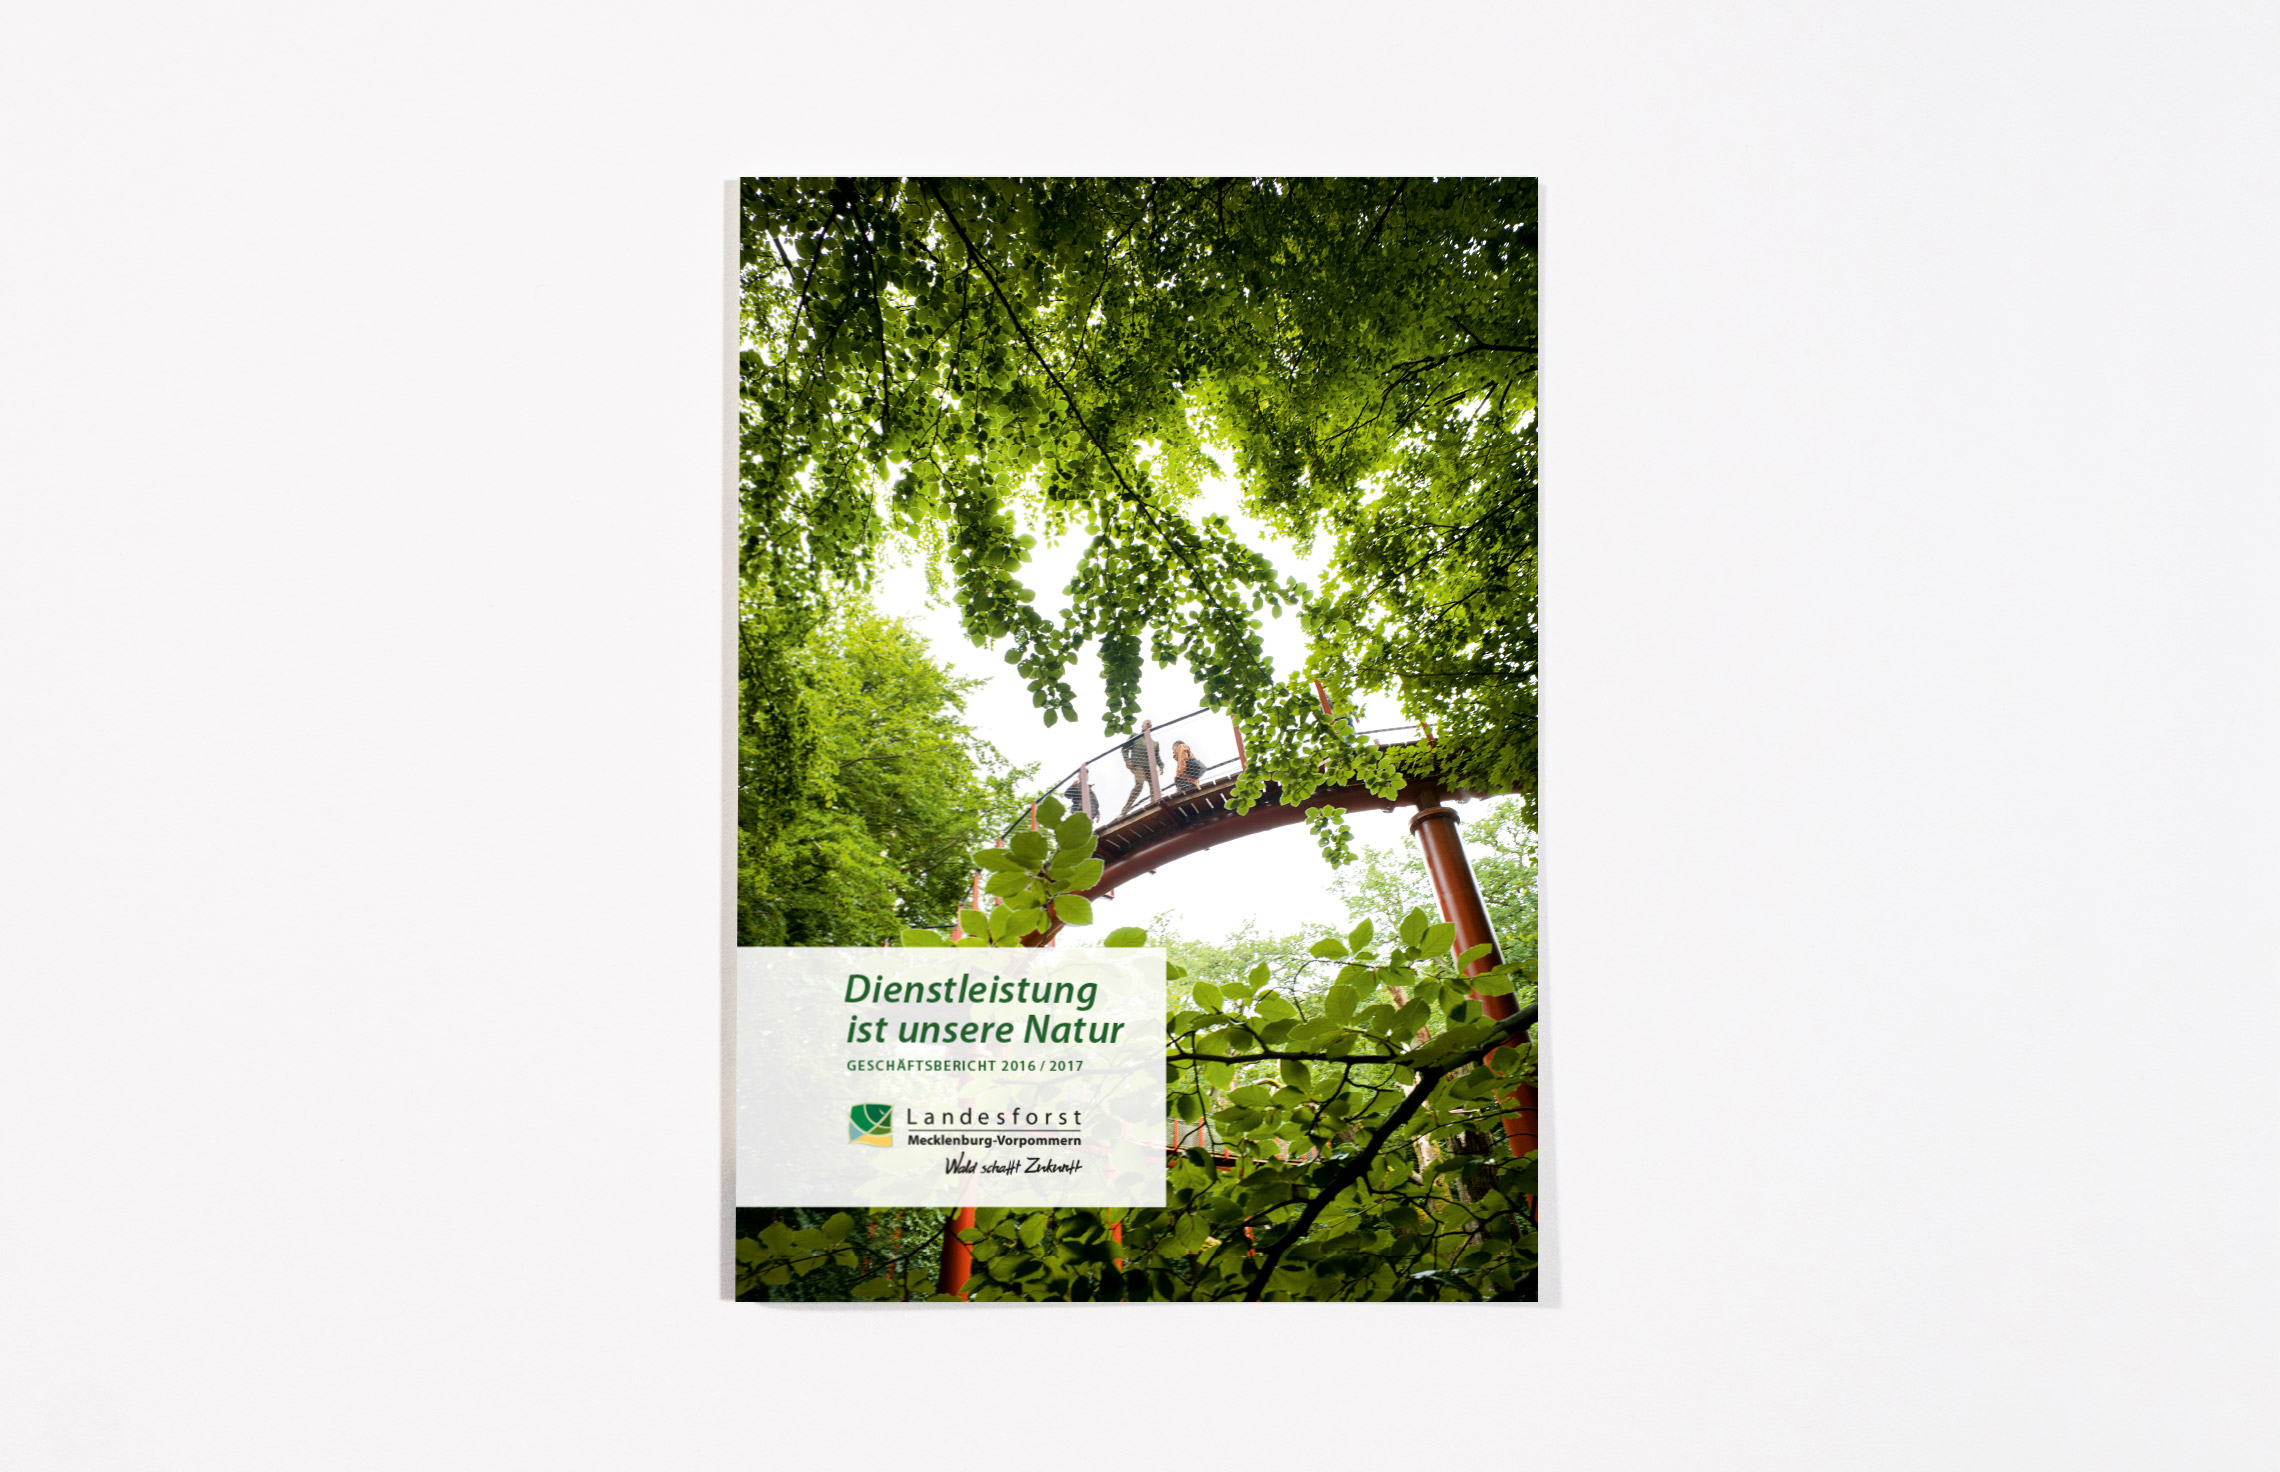 Geschäftsbericht 2016/17 für die Landesforst Mecklenburg-Vorpommern, Titel, Annualreport Design, Printdesign, Fotografie Jann Wilken